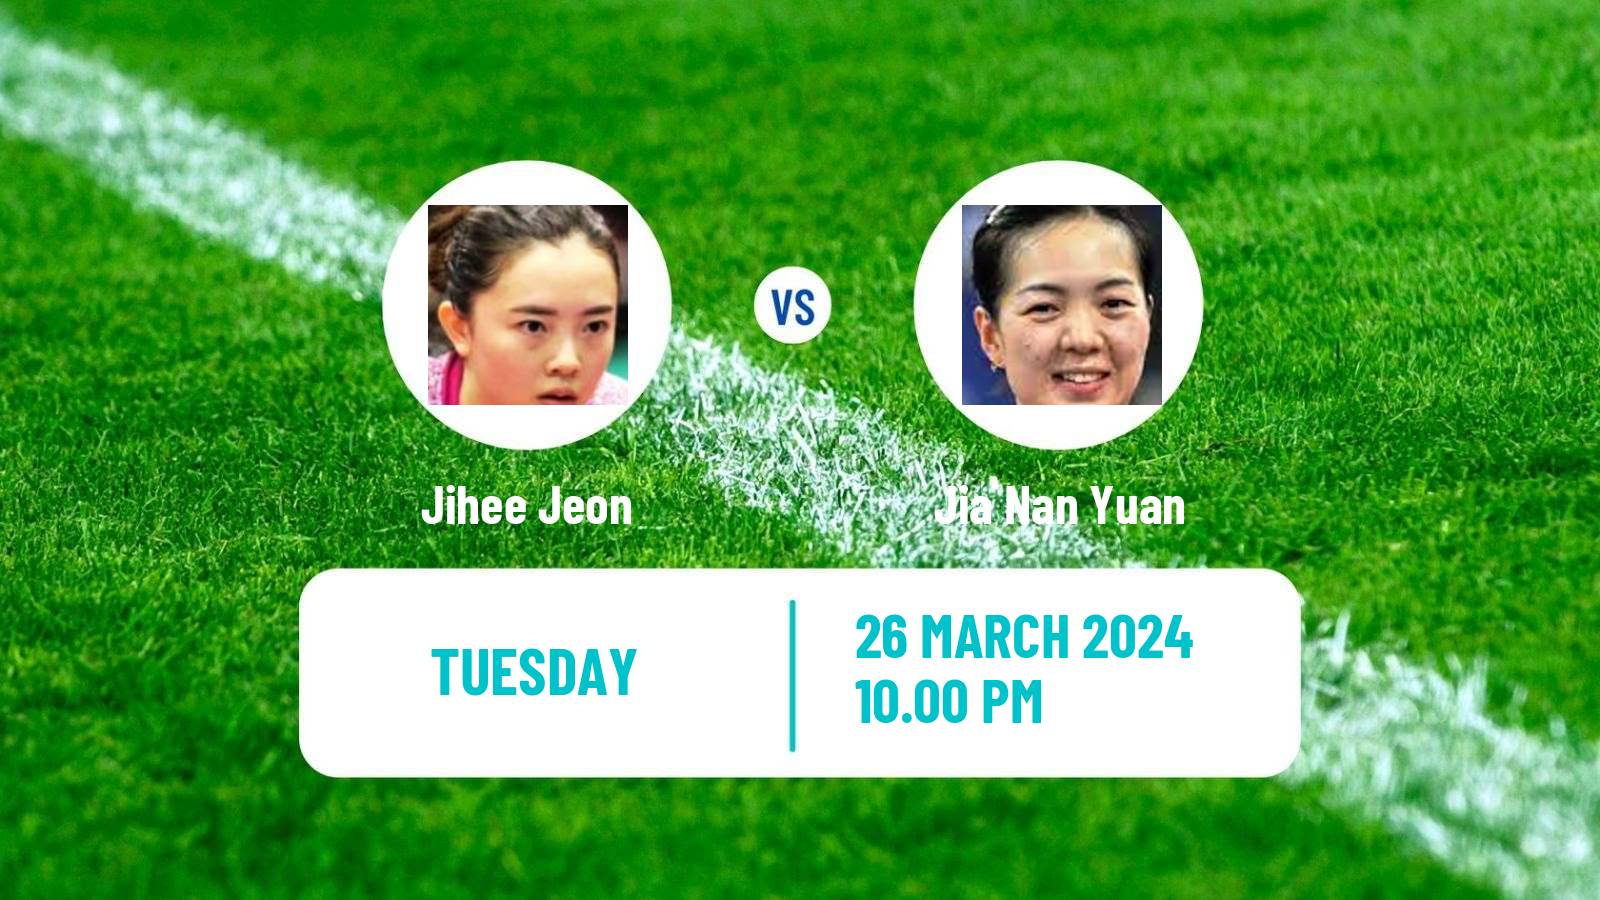 Table tennis Wtt Champions Incheon Women Jihee Jeon - Jia Nan Yuan